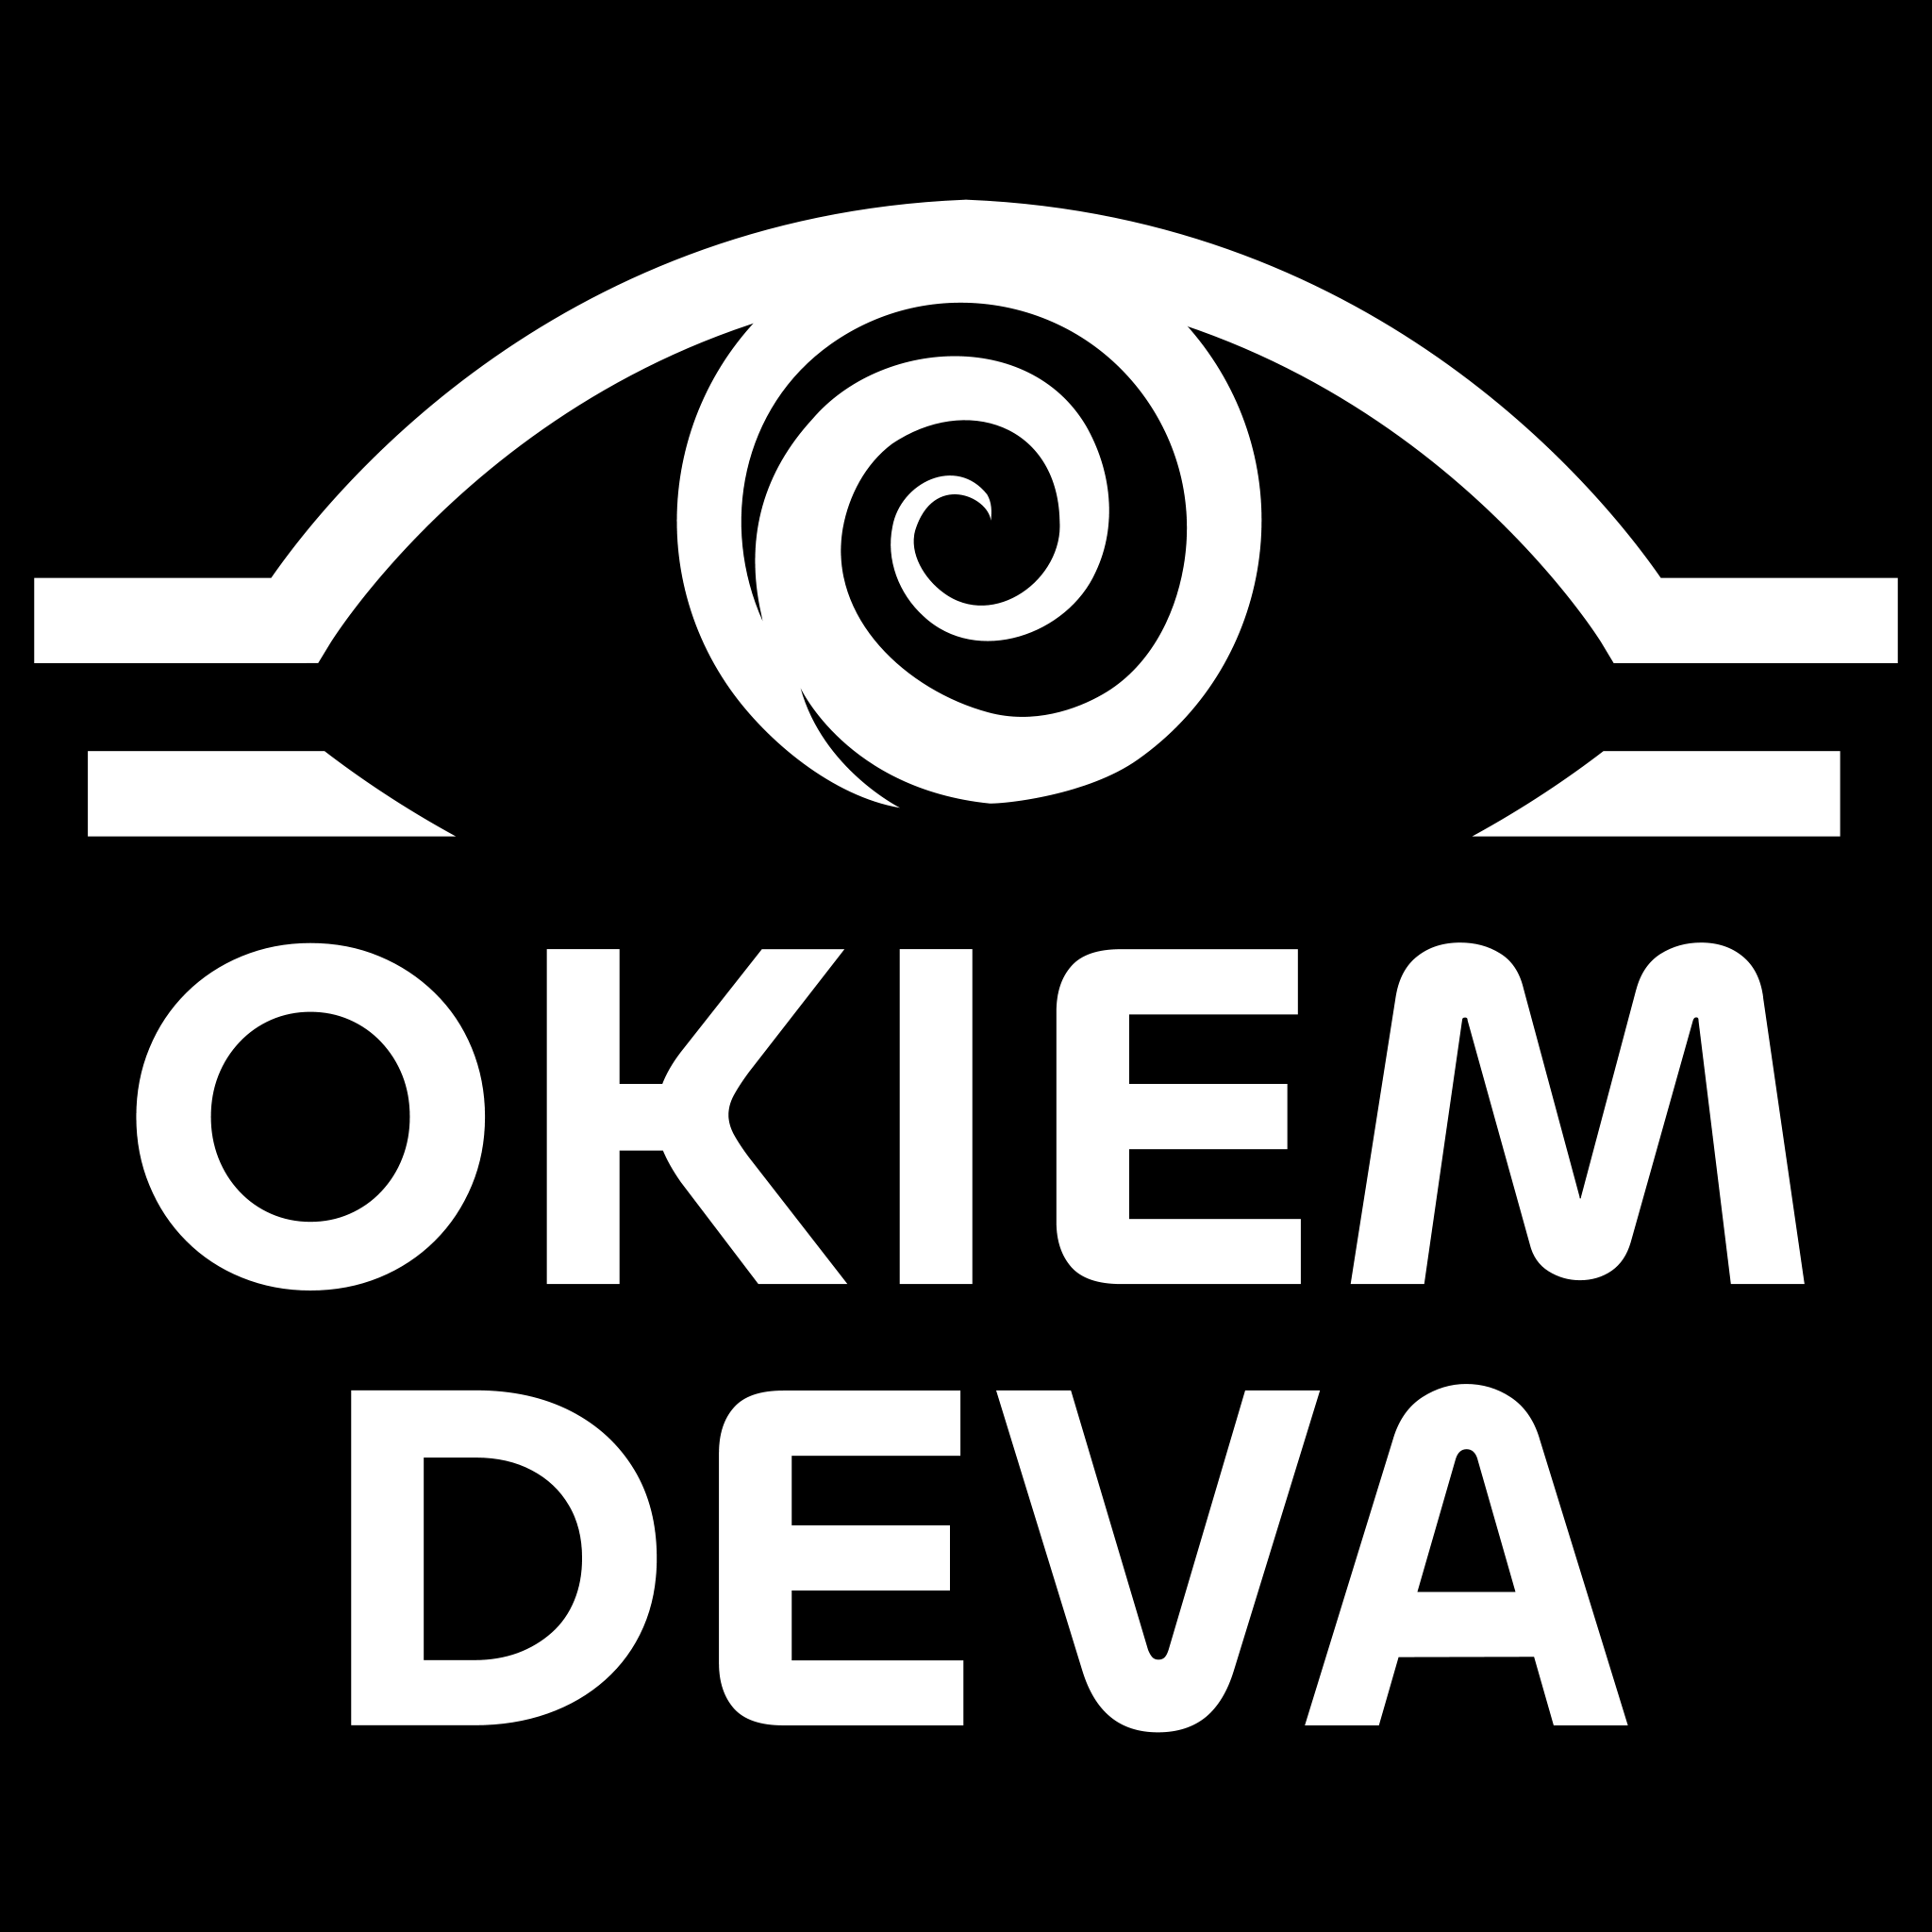 Avatar OkiemDeva